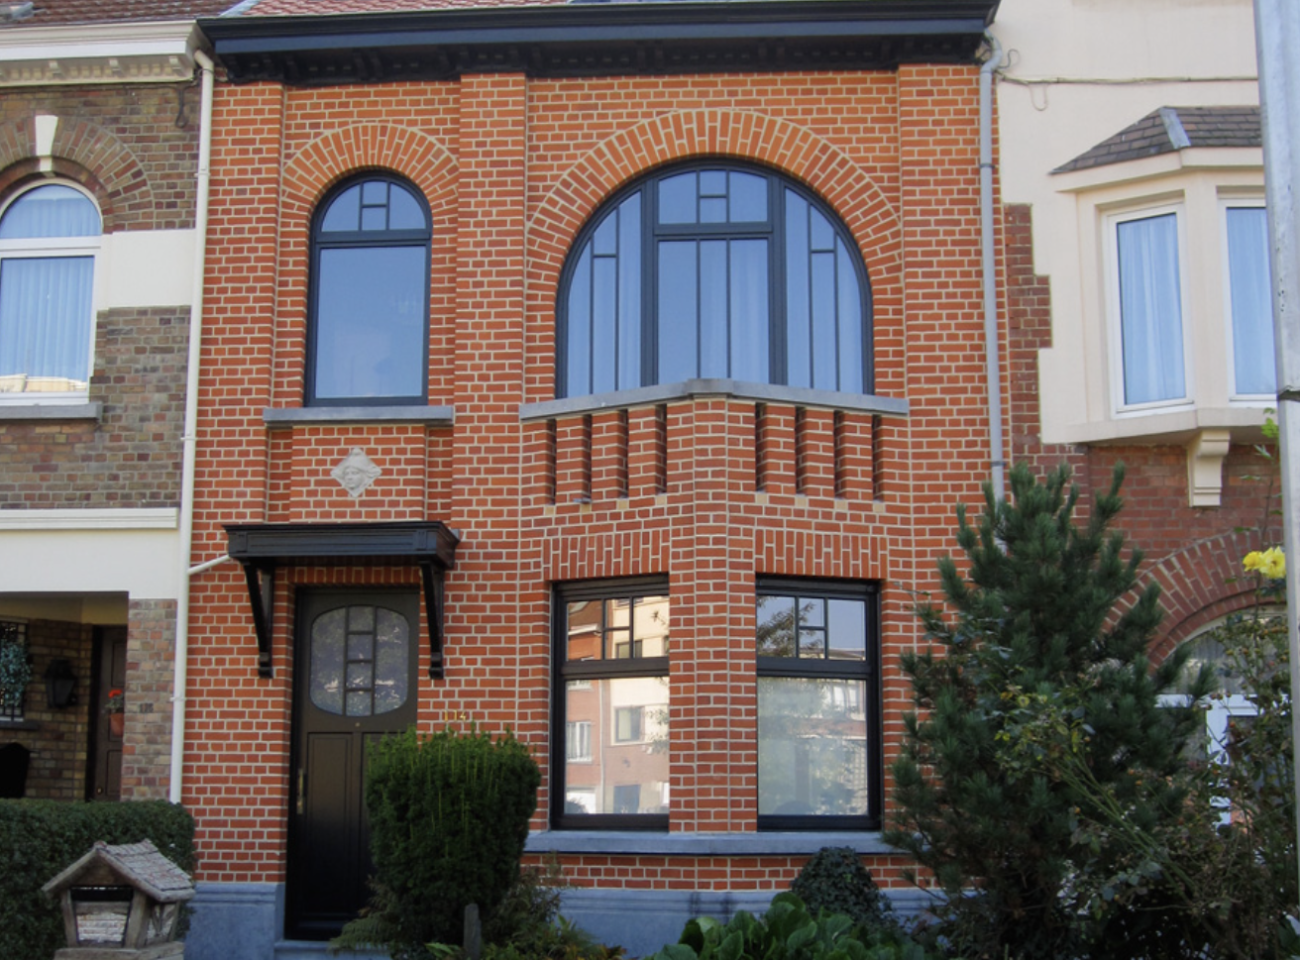 Édifice à deux étages en briques rouges restaurées, avec fenêtres en demi-lunes et porte noire